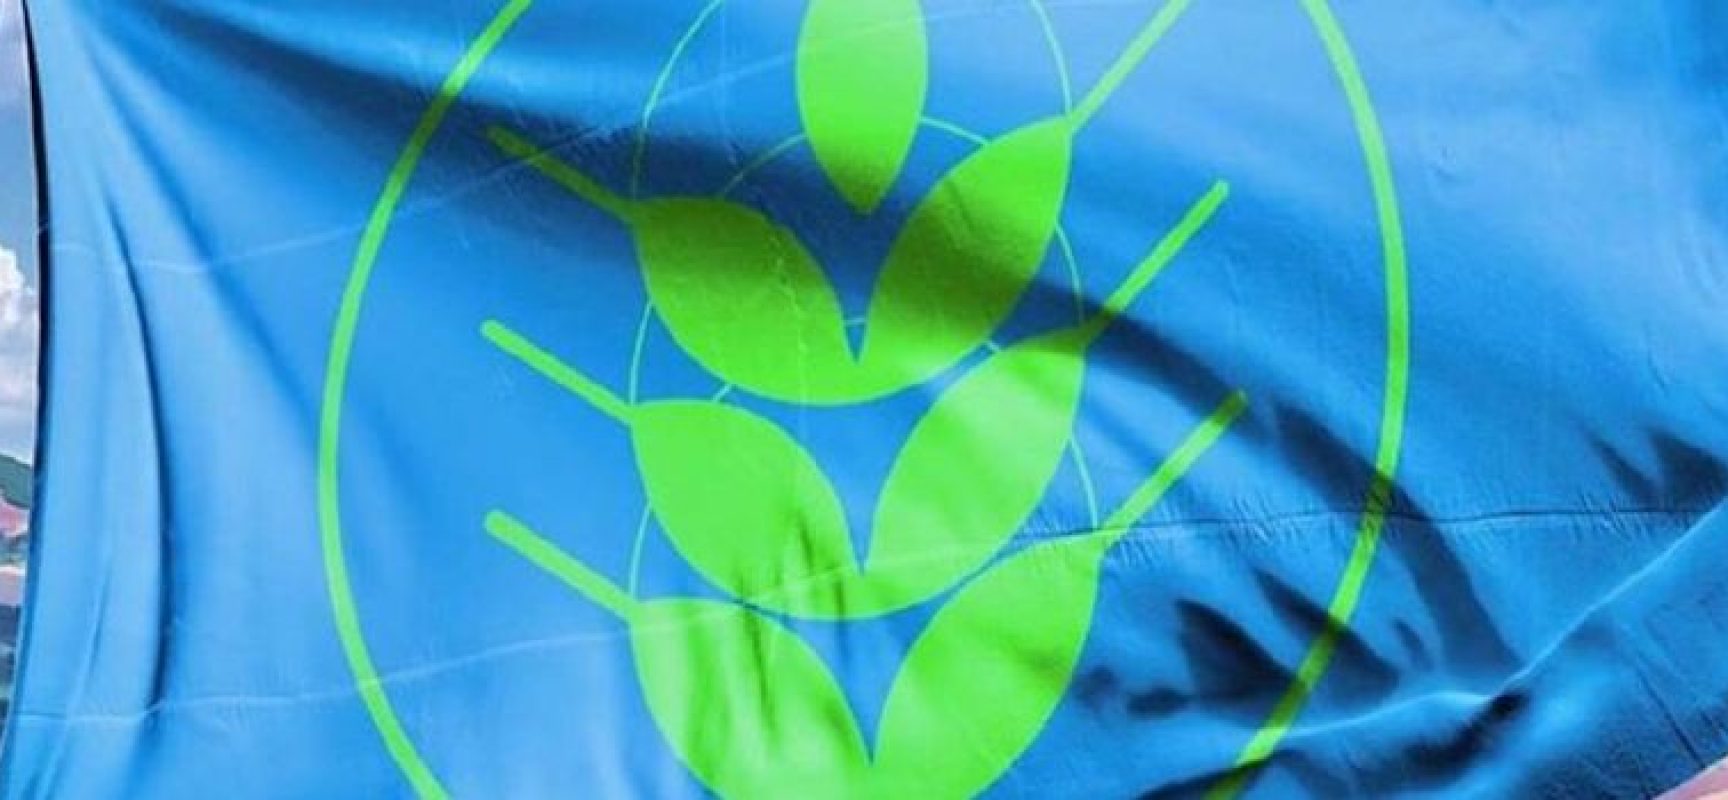 A Bisceglie il “Città Spighe Verdi 2022”, tra le 7 in Italia ad avere anche la doppia Bandiera Blu